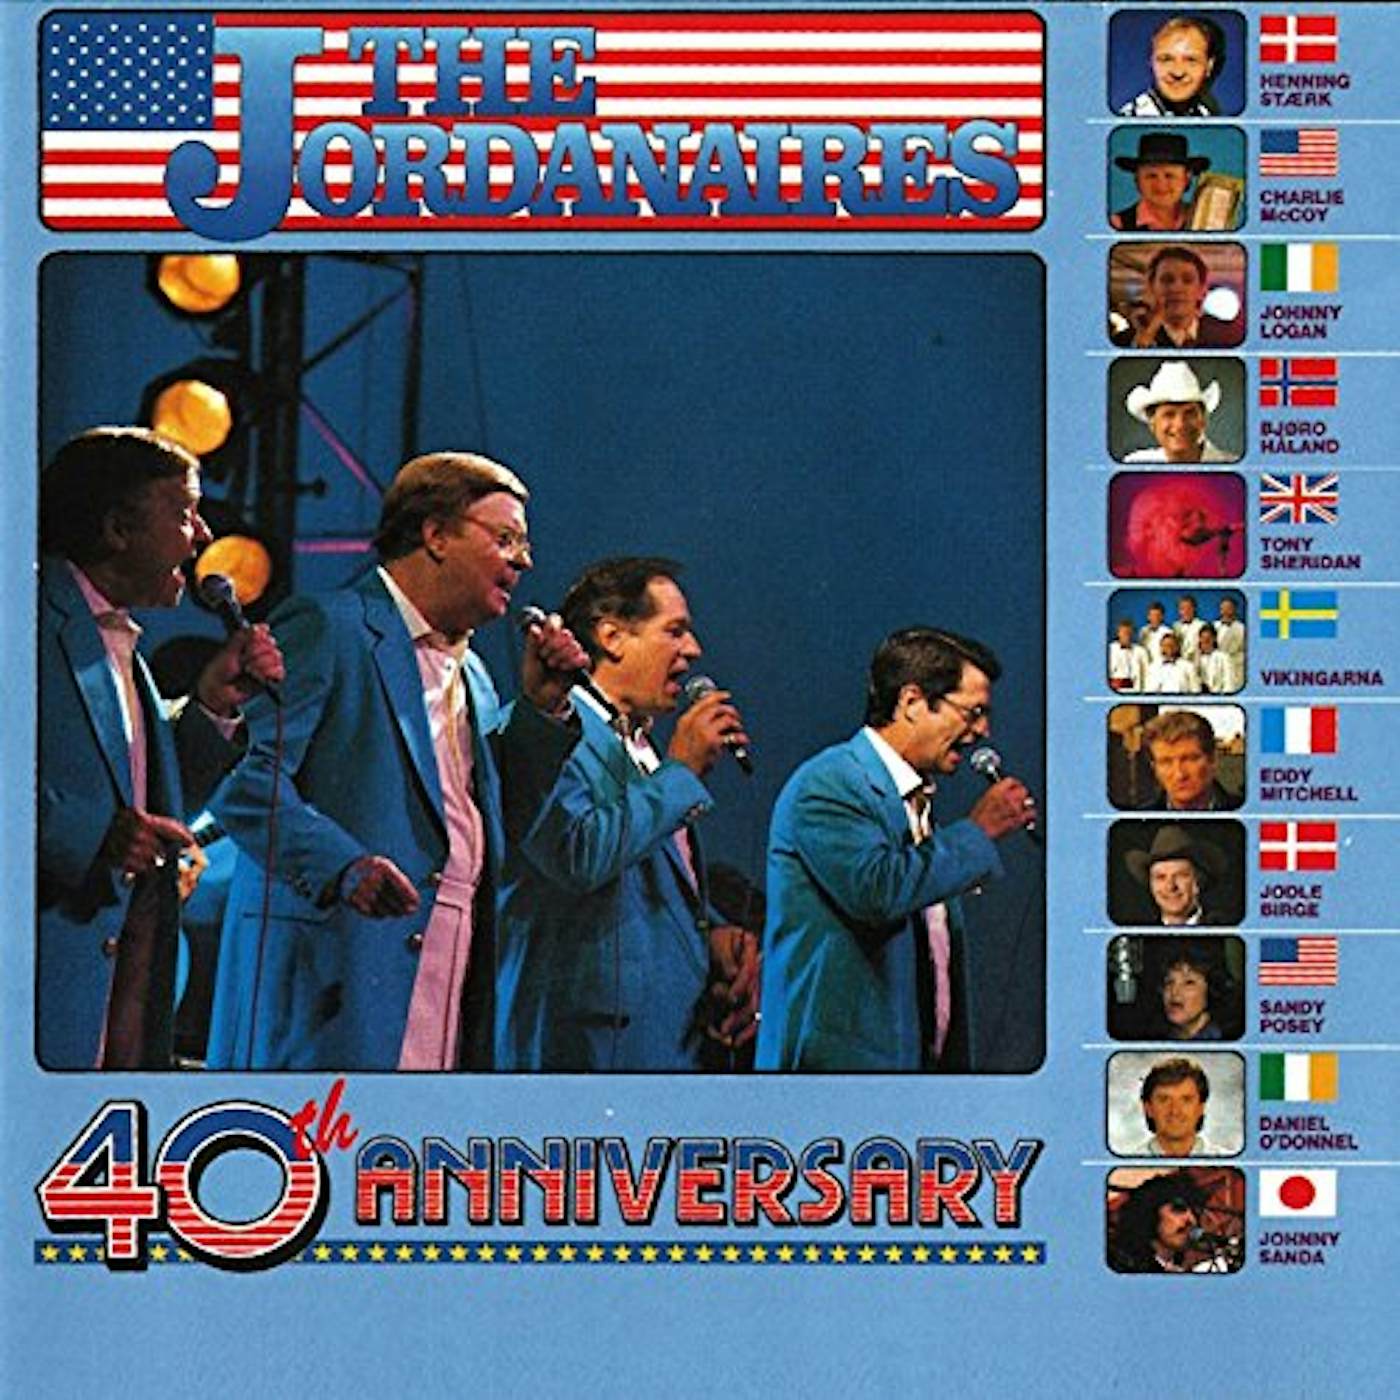 40TH ANNIVERSARY CELEBRATION ALBUM / VARIOUS Super Audio CD